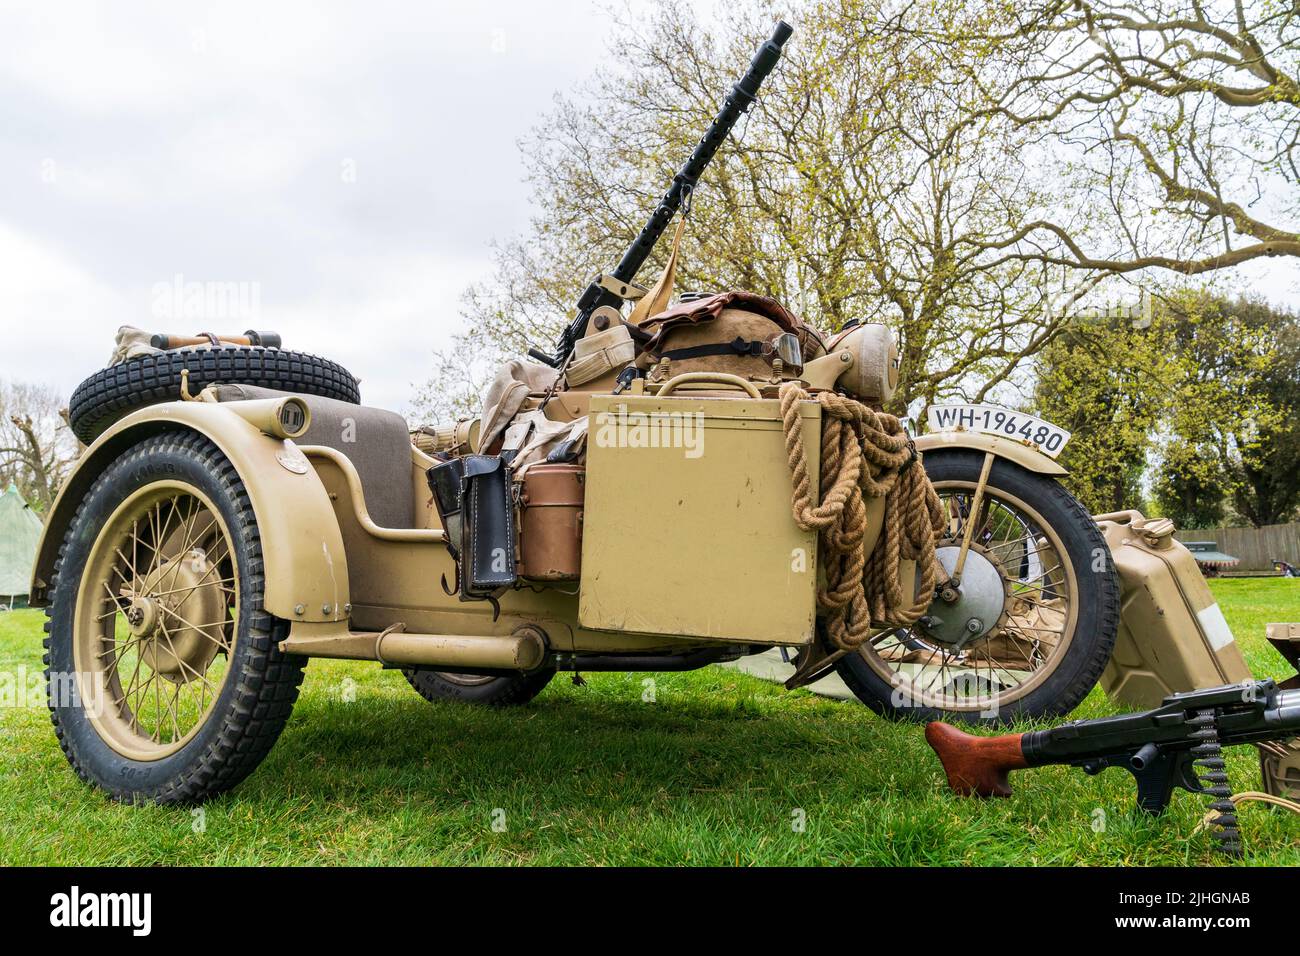 Weltkrieg zwei alte deutsche Motorrad und Seitenwagen mit montiert MG34 Maschinengewehr. Gelb-grün lackiert für afrika korps Wüstentarnung. Stockfoto